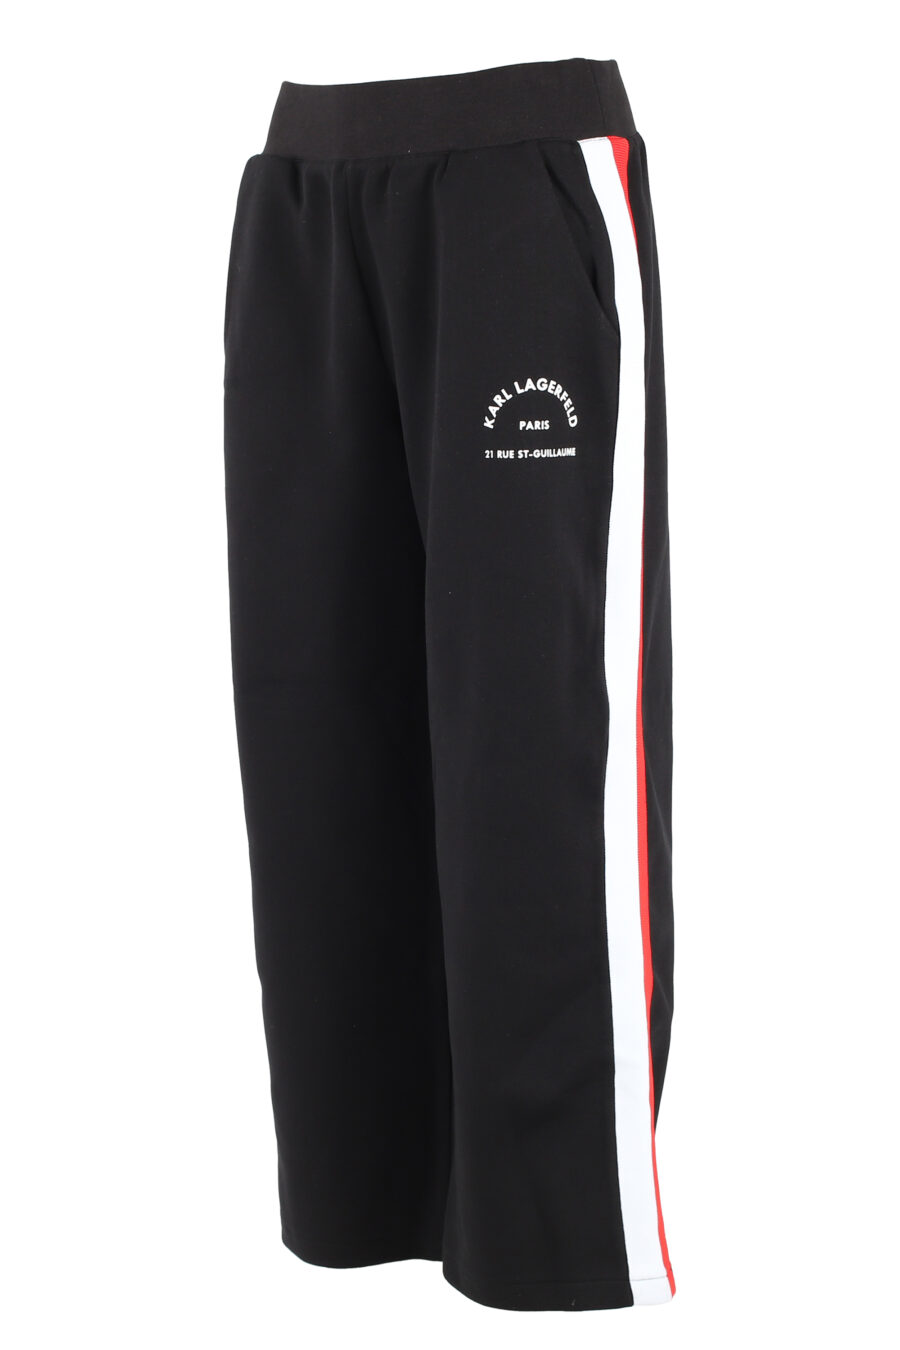 Pantalón de chándal negro con lineas multicolor lateral - IMG 5051